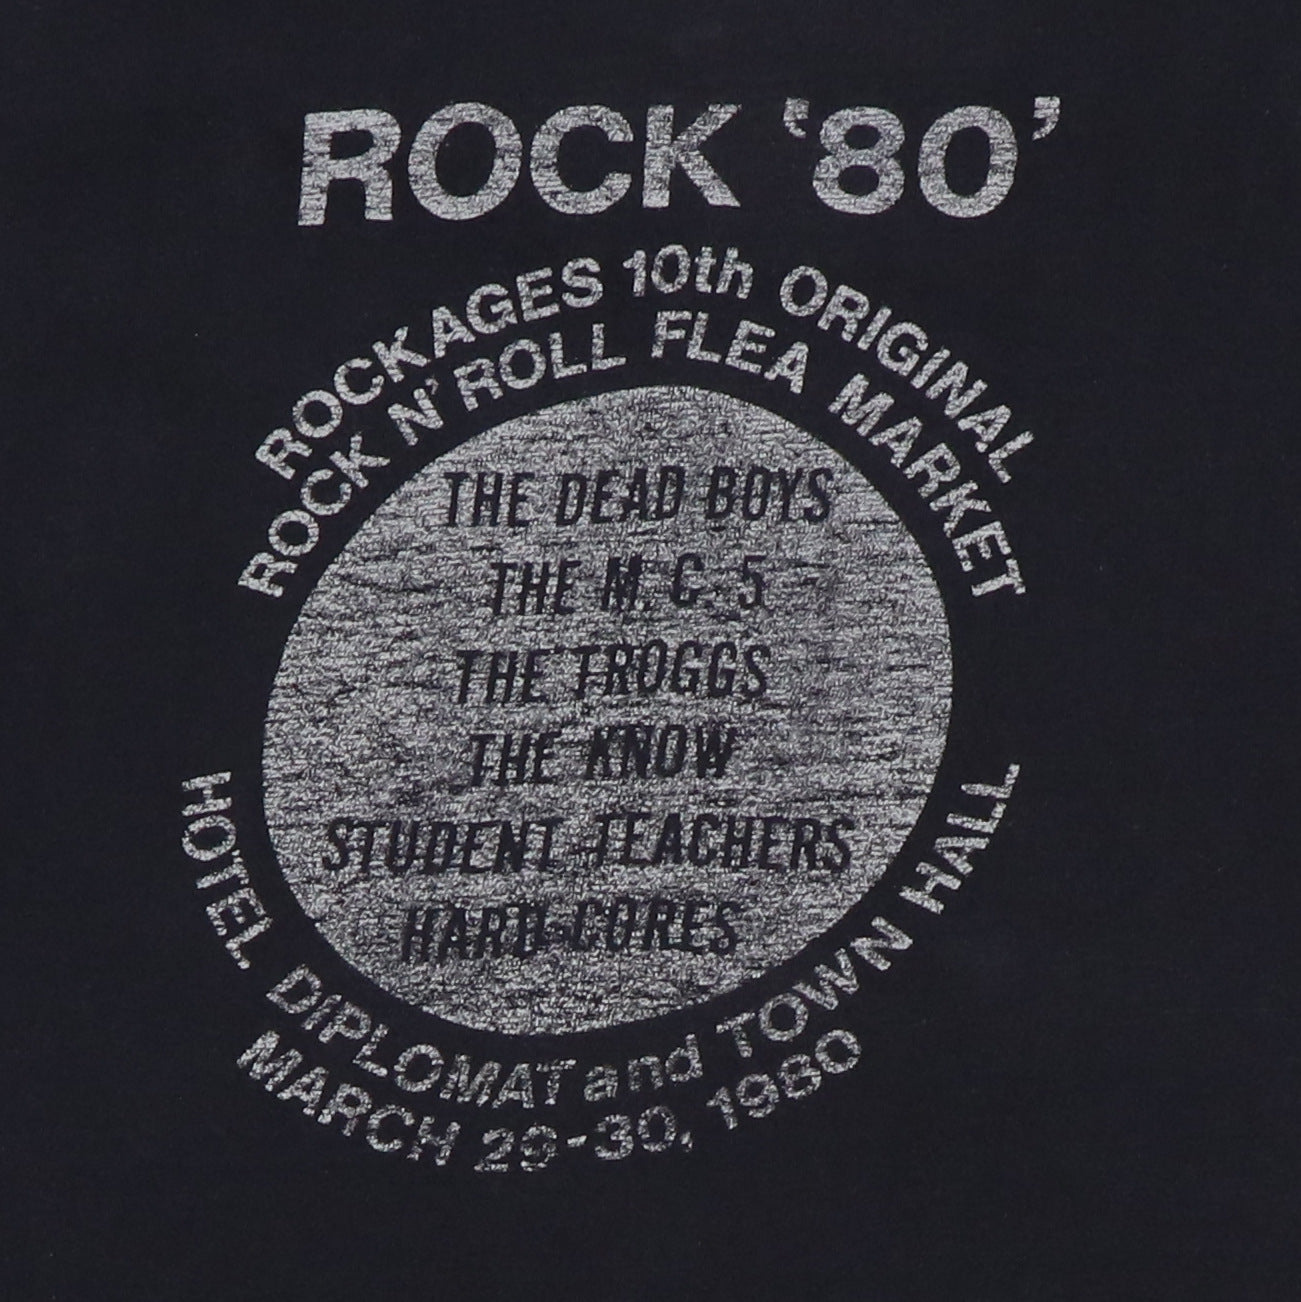 1980 Dead Boys Rockages Concert Shirt